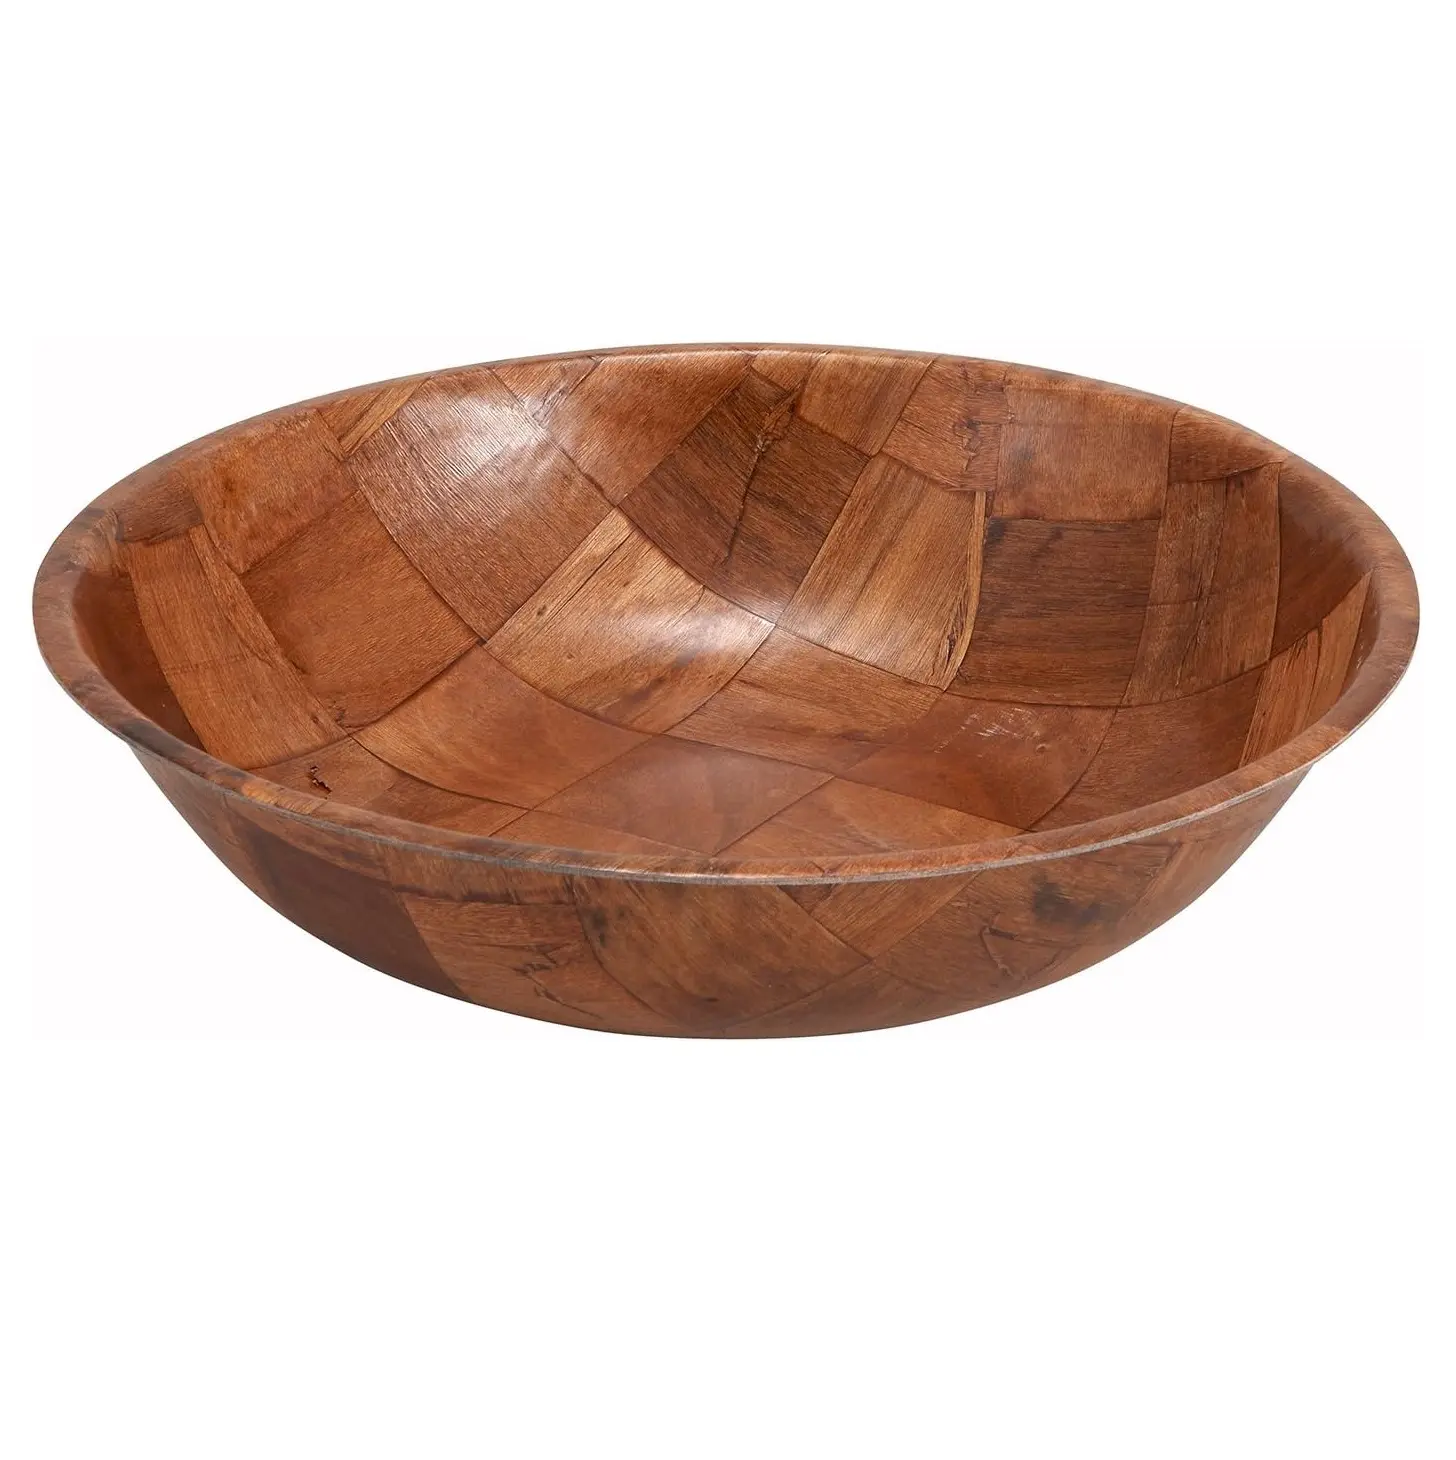 최고의 품질 천연 나무 그릇 독특한 홈 악센트 조각 사용자 정의 크기와 고급 나무 서빙 그릇